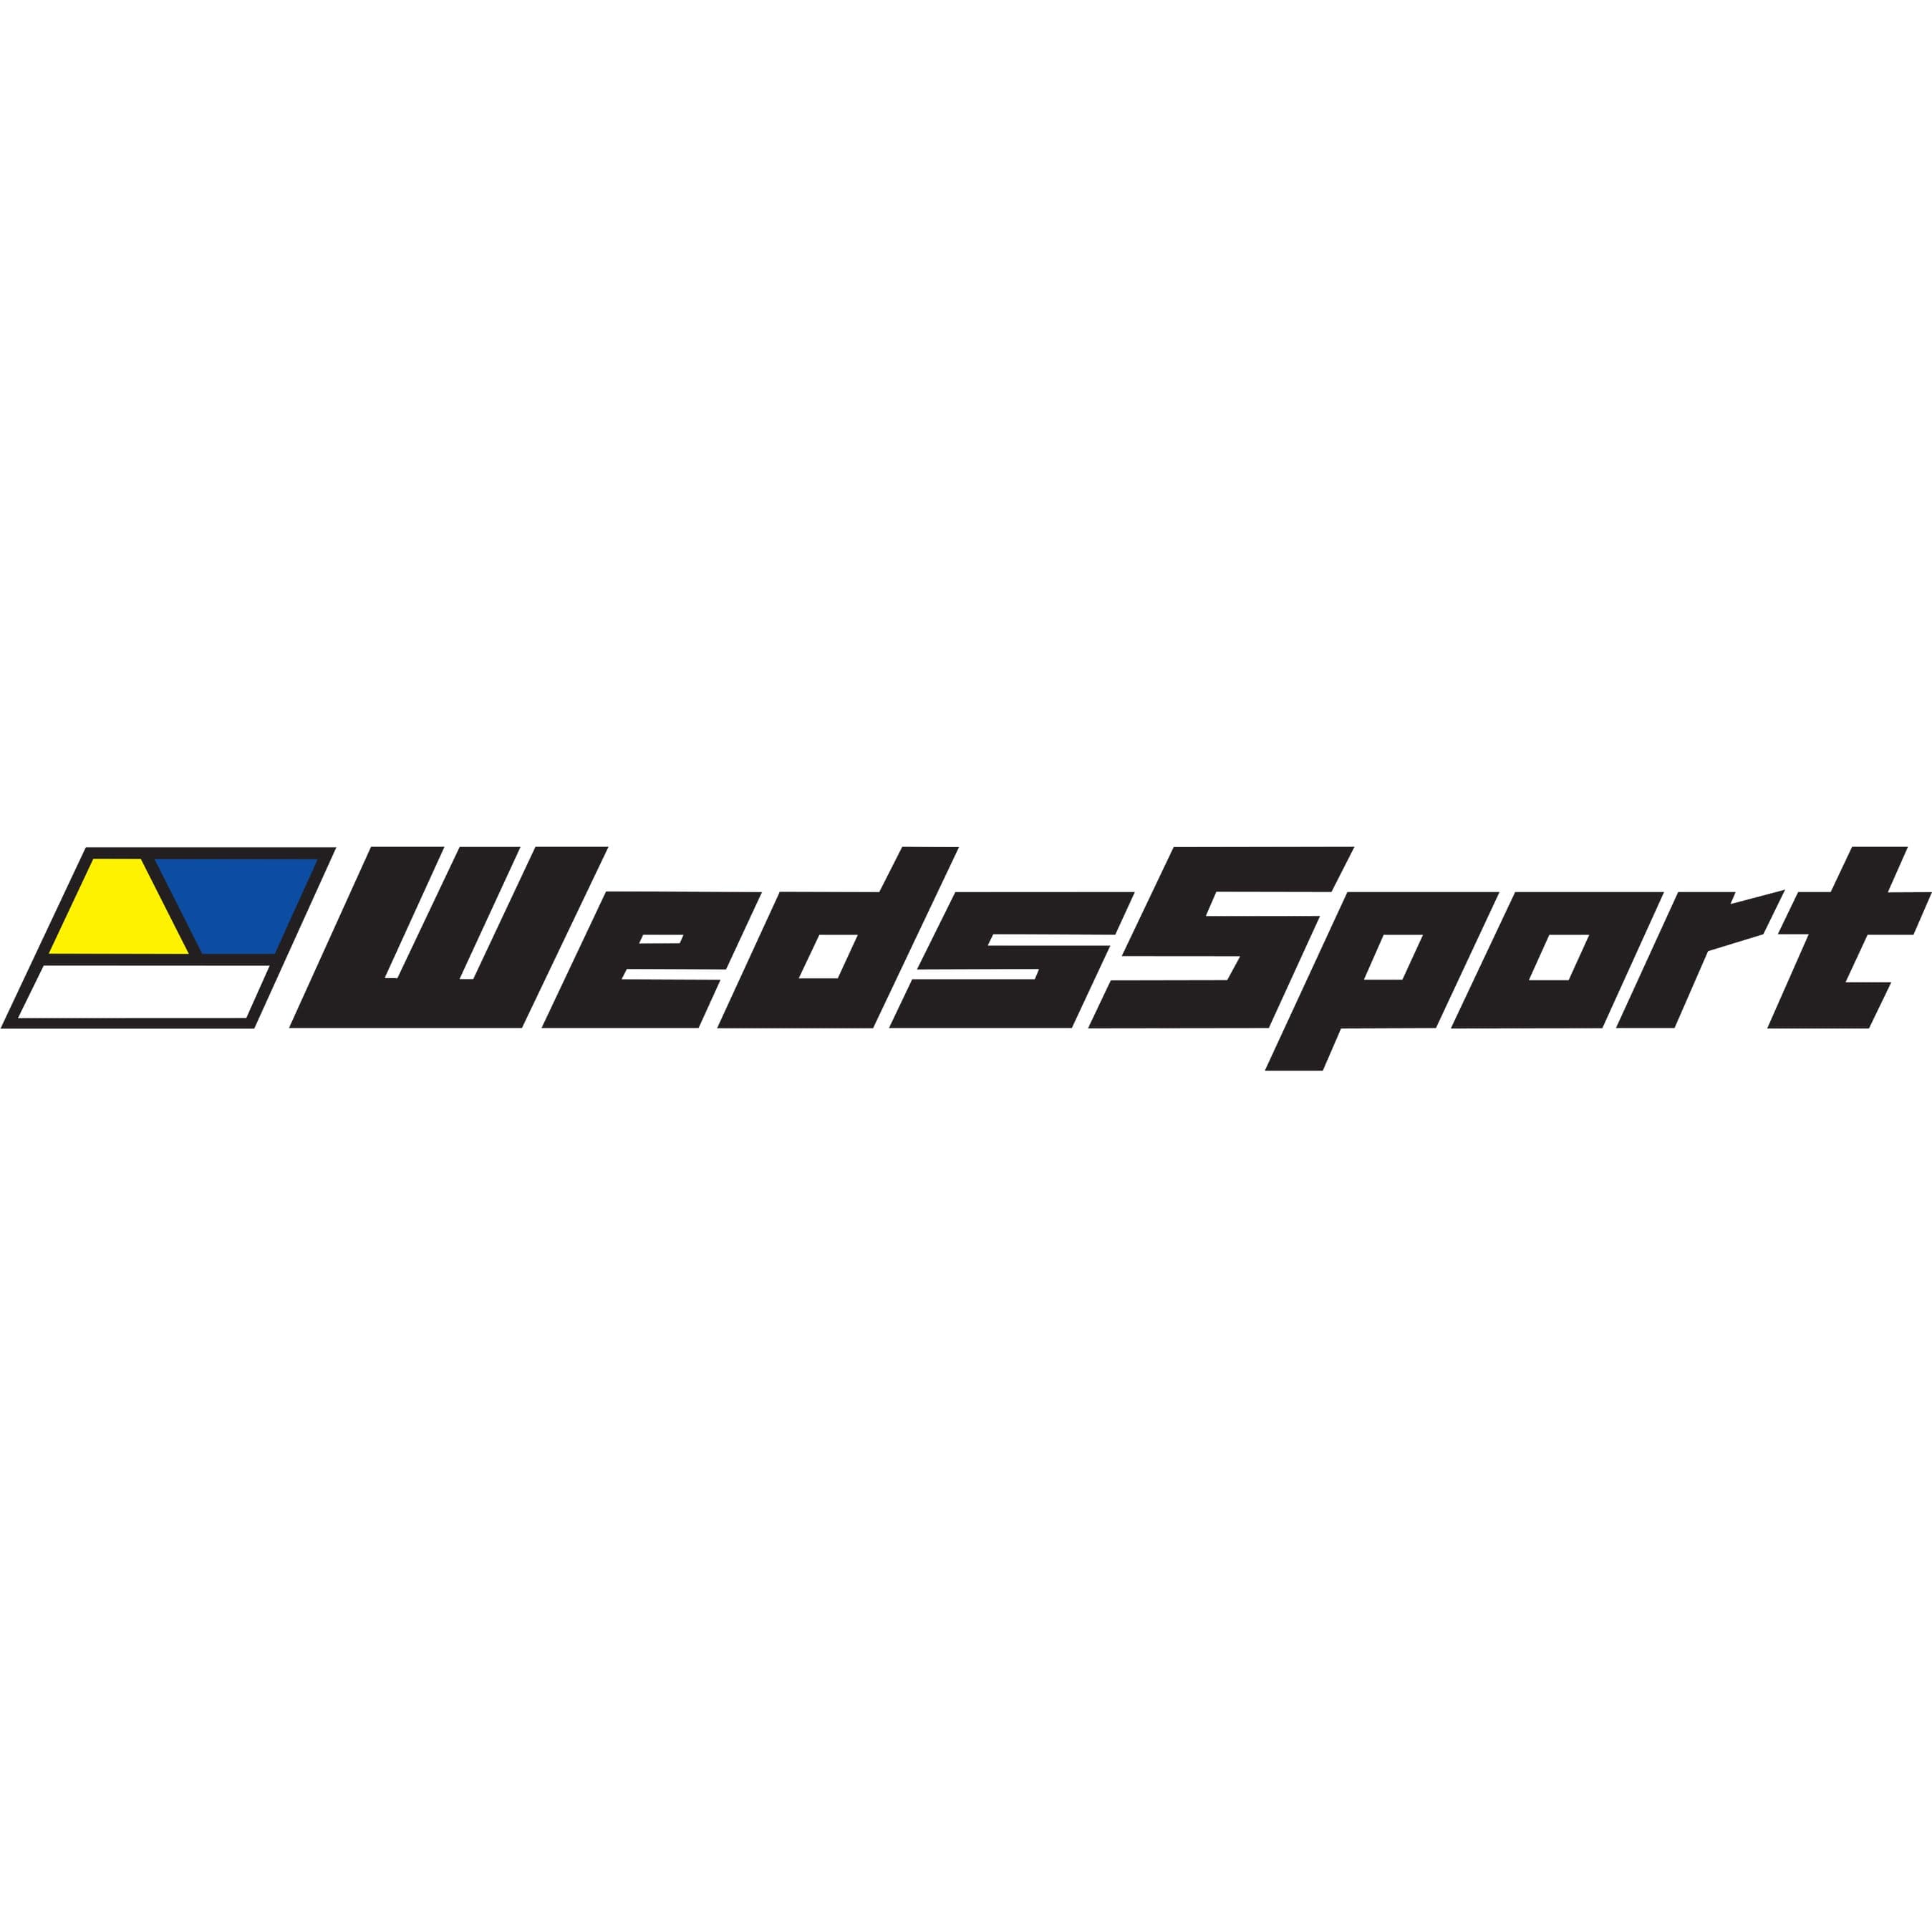 WedsSport TC105X Forged 18x9.5" +35 5x114.3 EJ-TI Wheel